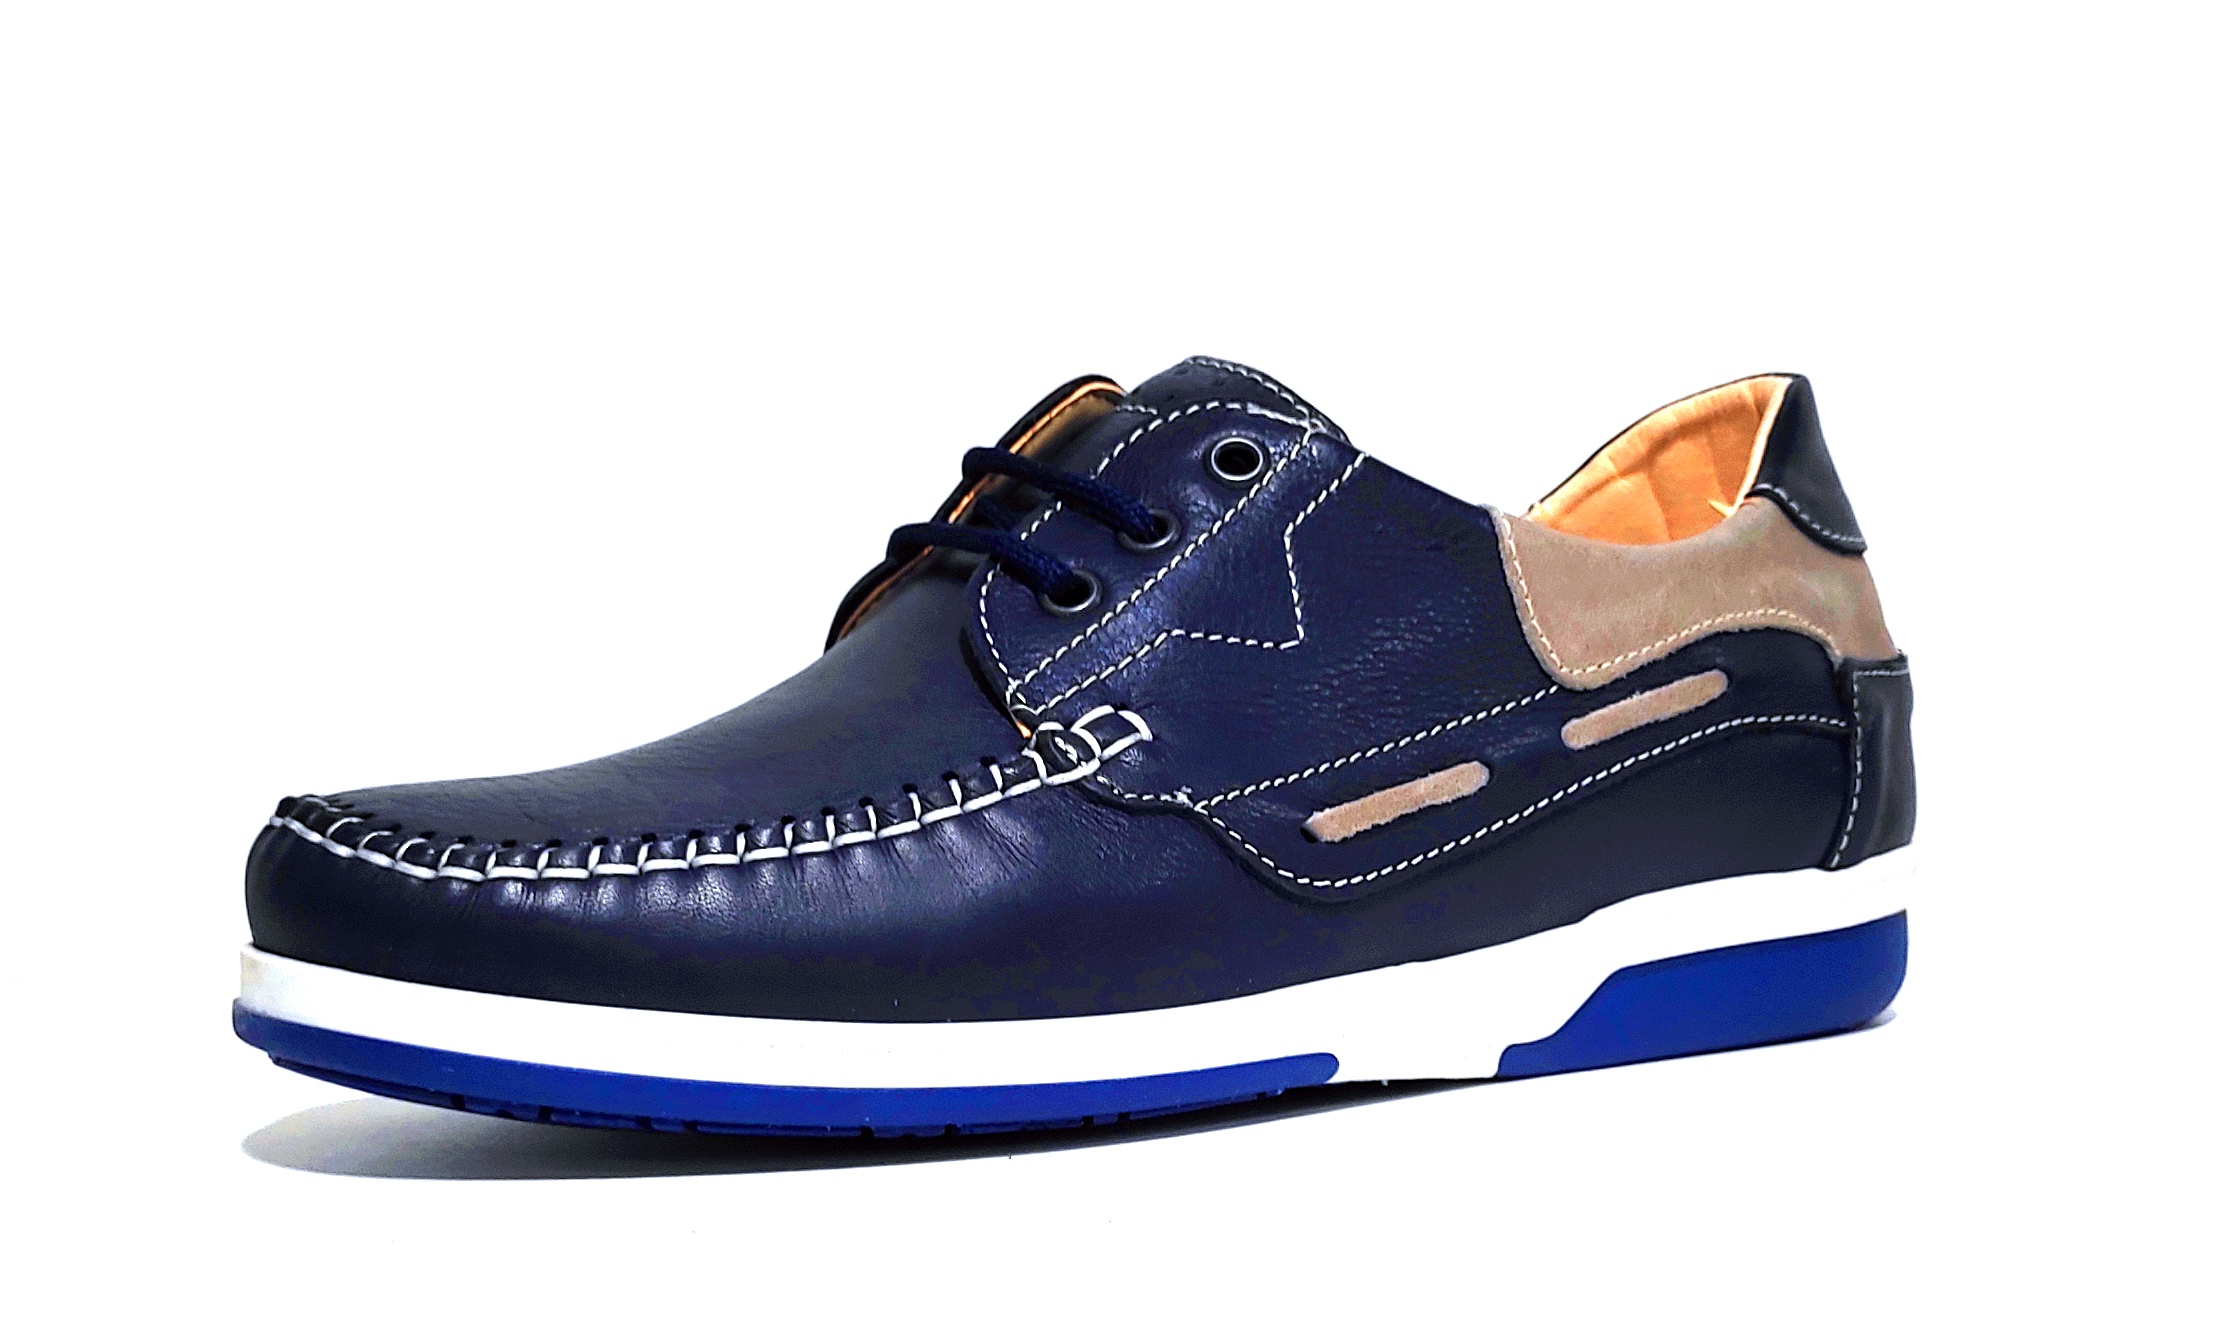 pronto moda crispino 410 scarpa blu vera pelle allacciata uomo estate scarpe mad - Bild 1 von 1